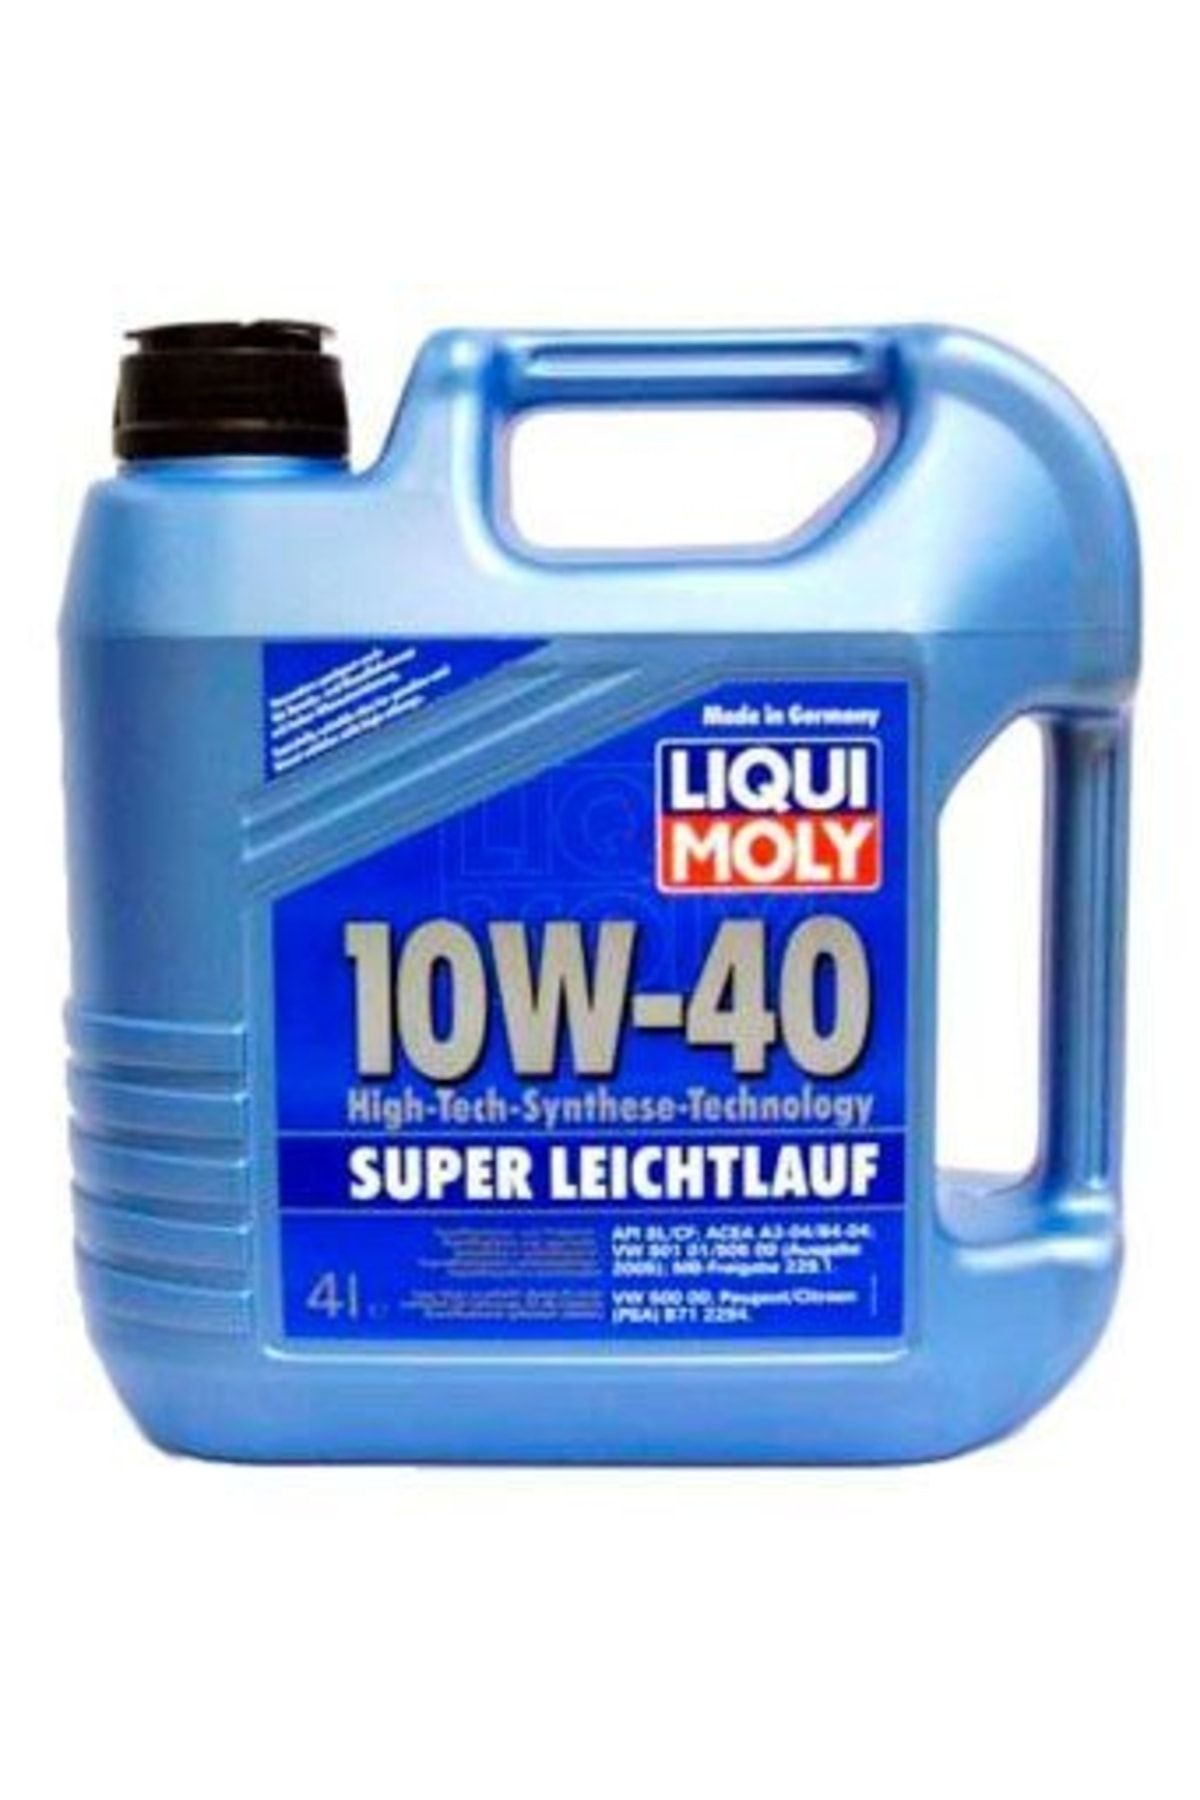 Сайт масел ликви моли. Ликви моли 10w 40 super Leichtlauf. Моторное масло Liqui Moly super Leichtlauf 10w-40 4 л. Liqui Moly super Leichtlauf 10w-40 5 л артикул. Ликви моли супер лайчлауф 10w 40.